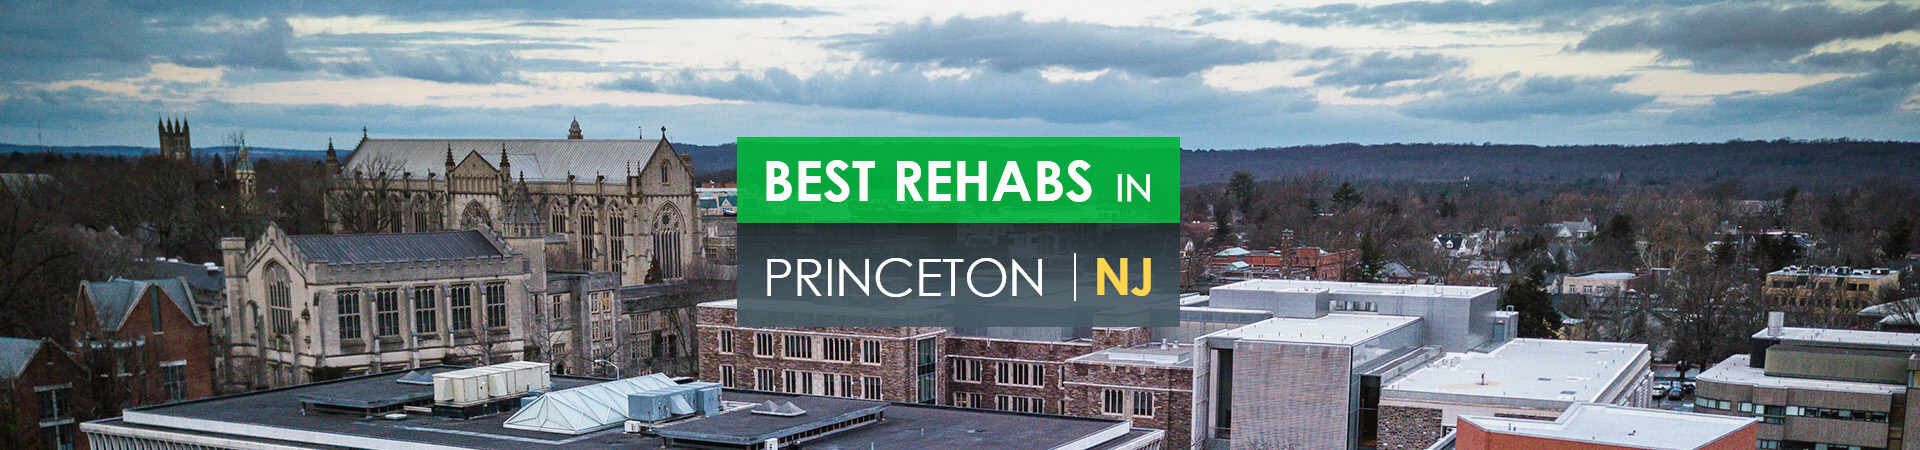 Best rehabs in Princeton, NJ